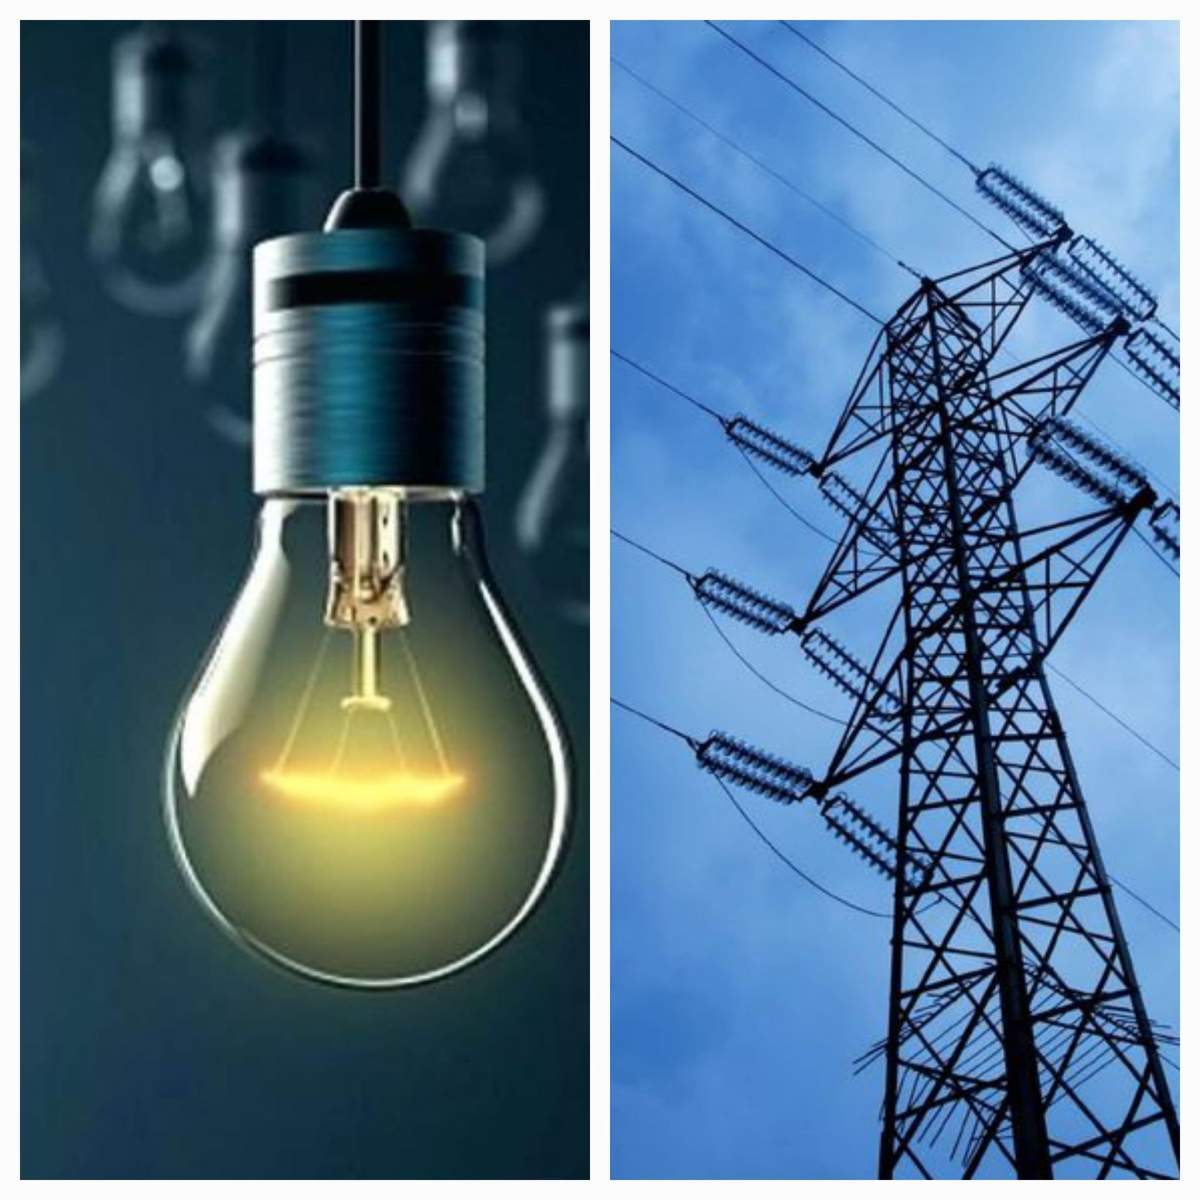 Curentul electric, întrerupt temporar în mai multe zone din România. Orașele care vor fi afectate până pe 30 octombrie